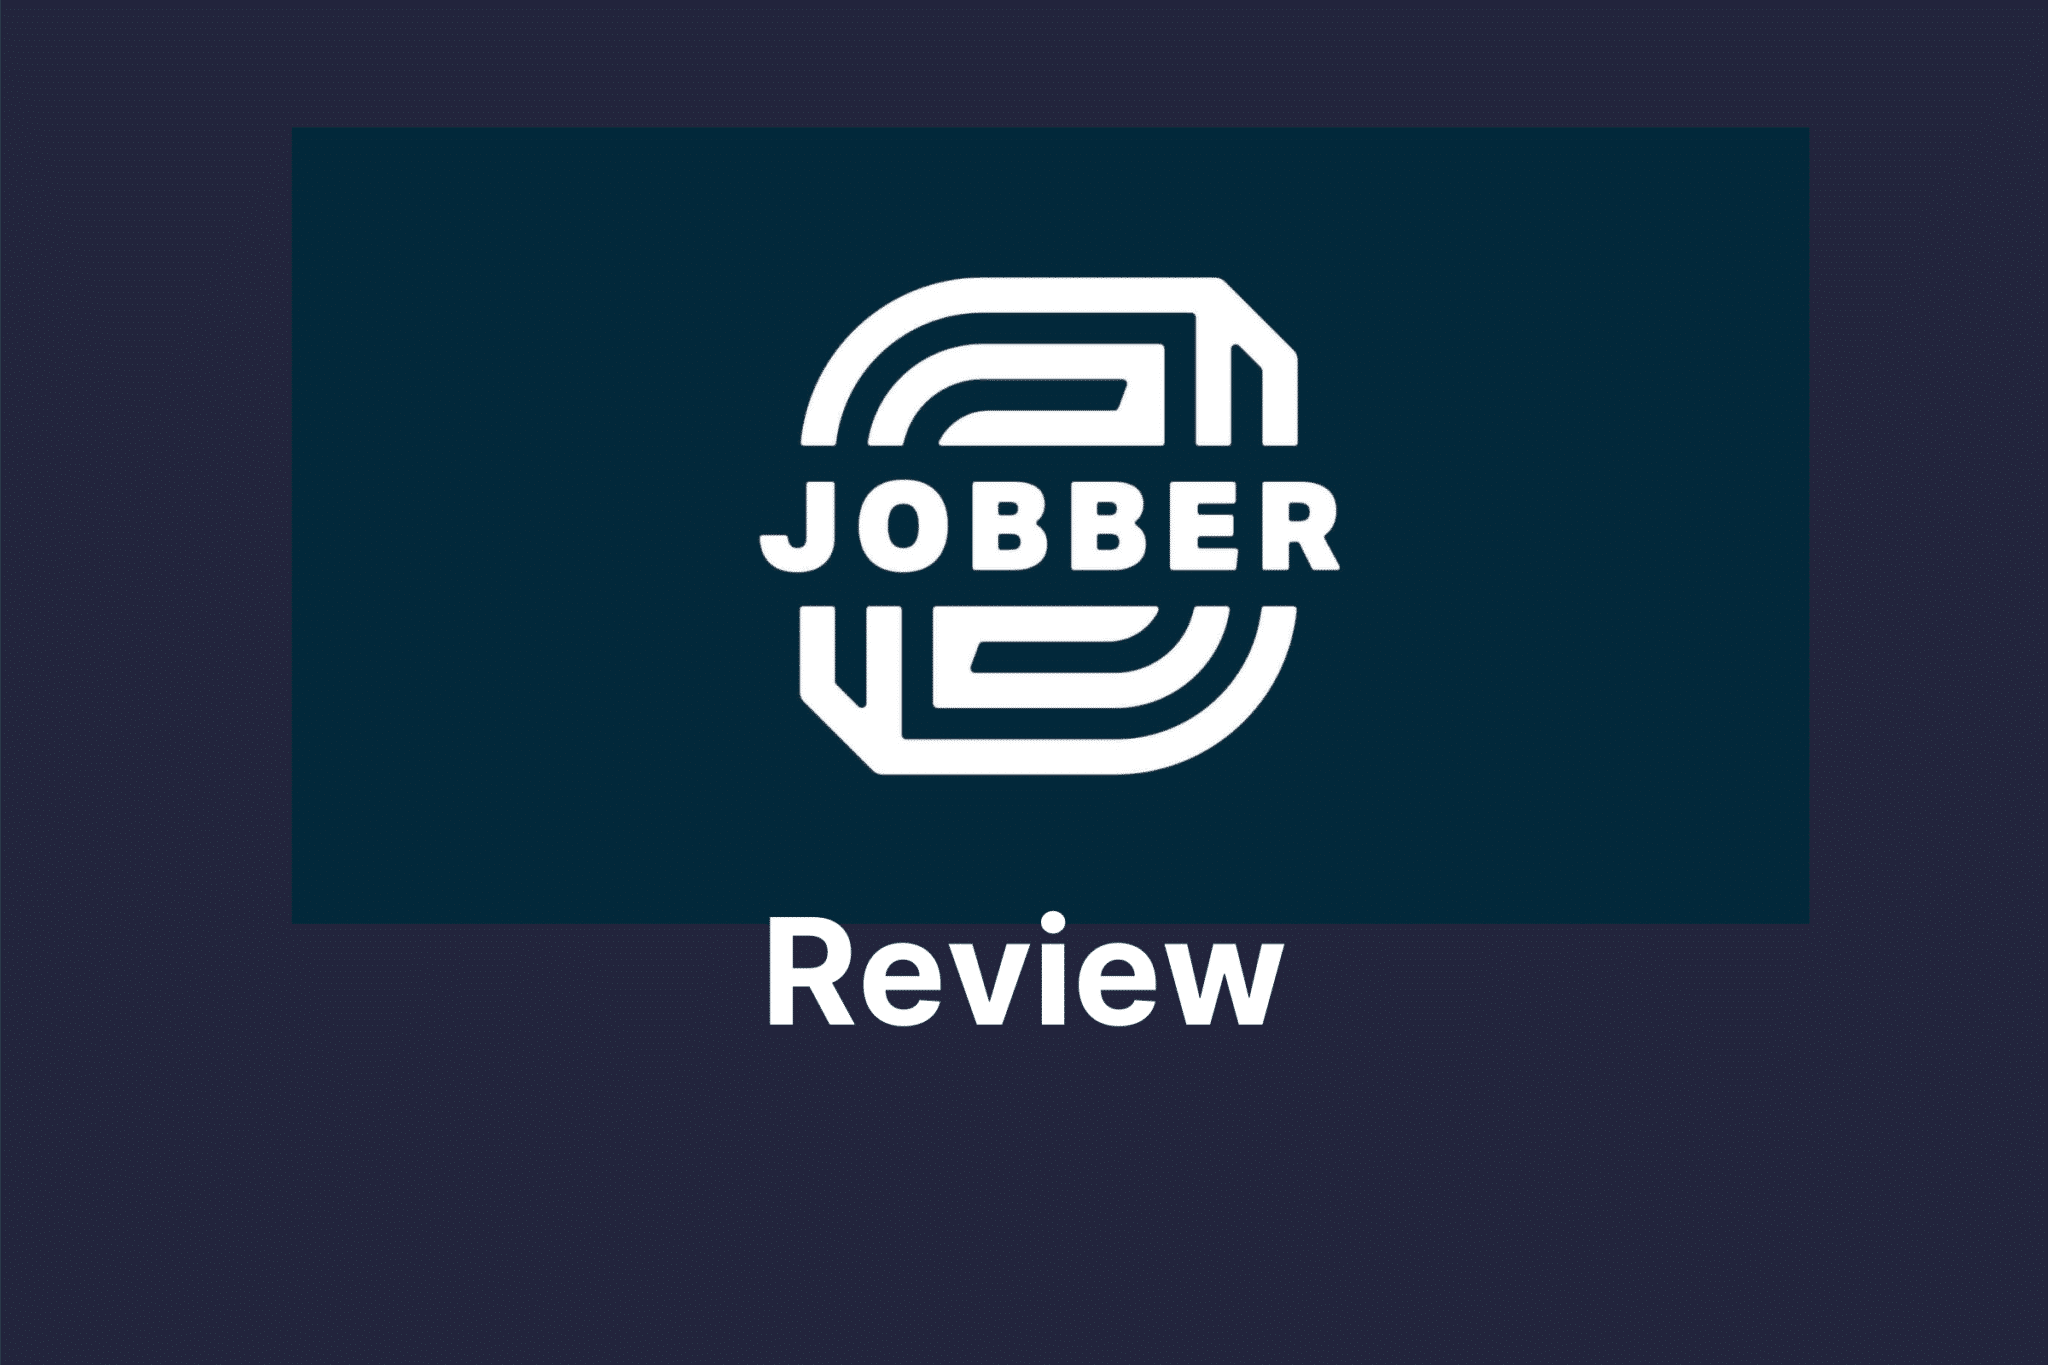 Review of Jobber